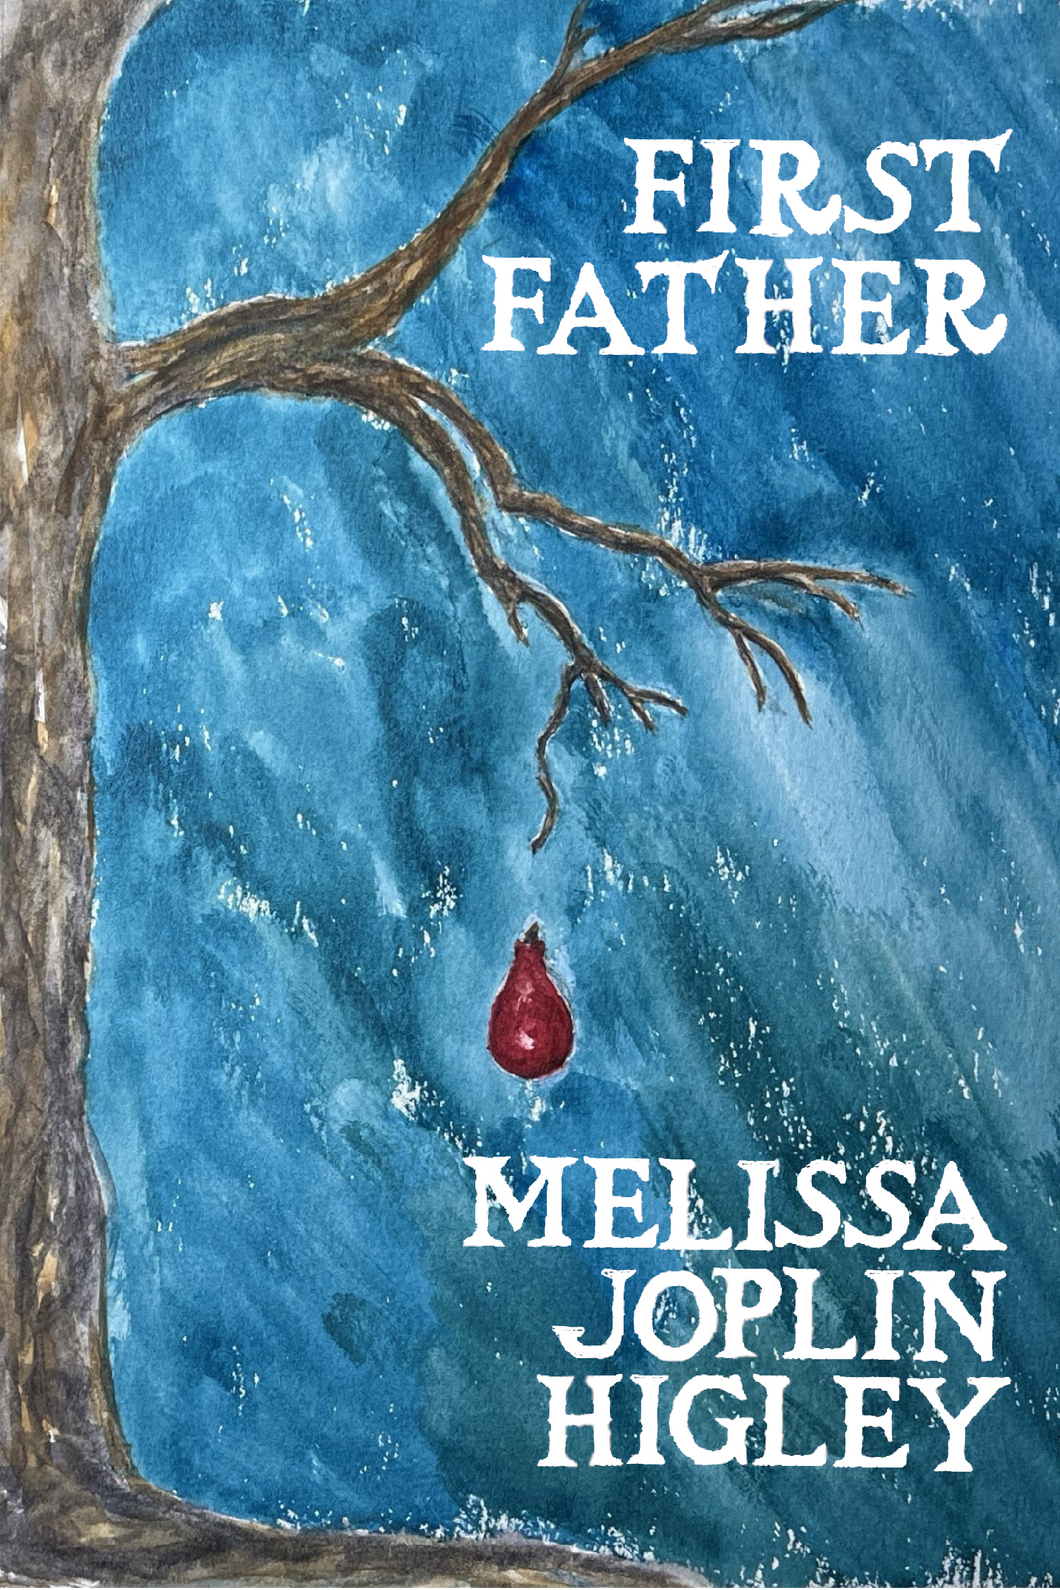 First Father, by Melissa Joplin Higley-Print Books-Bottlecap Press